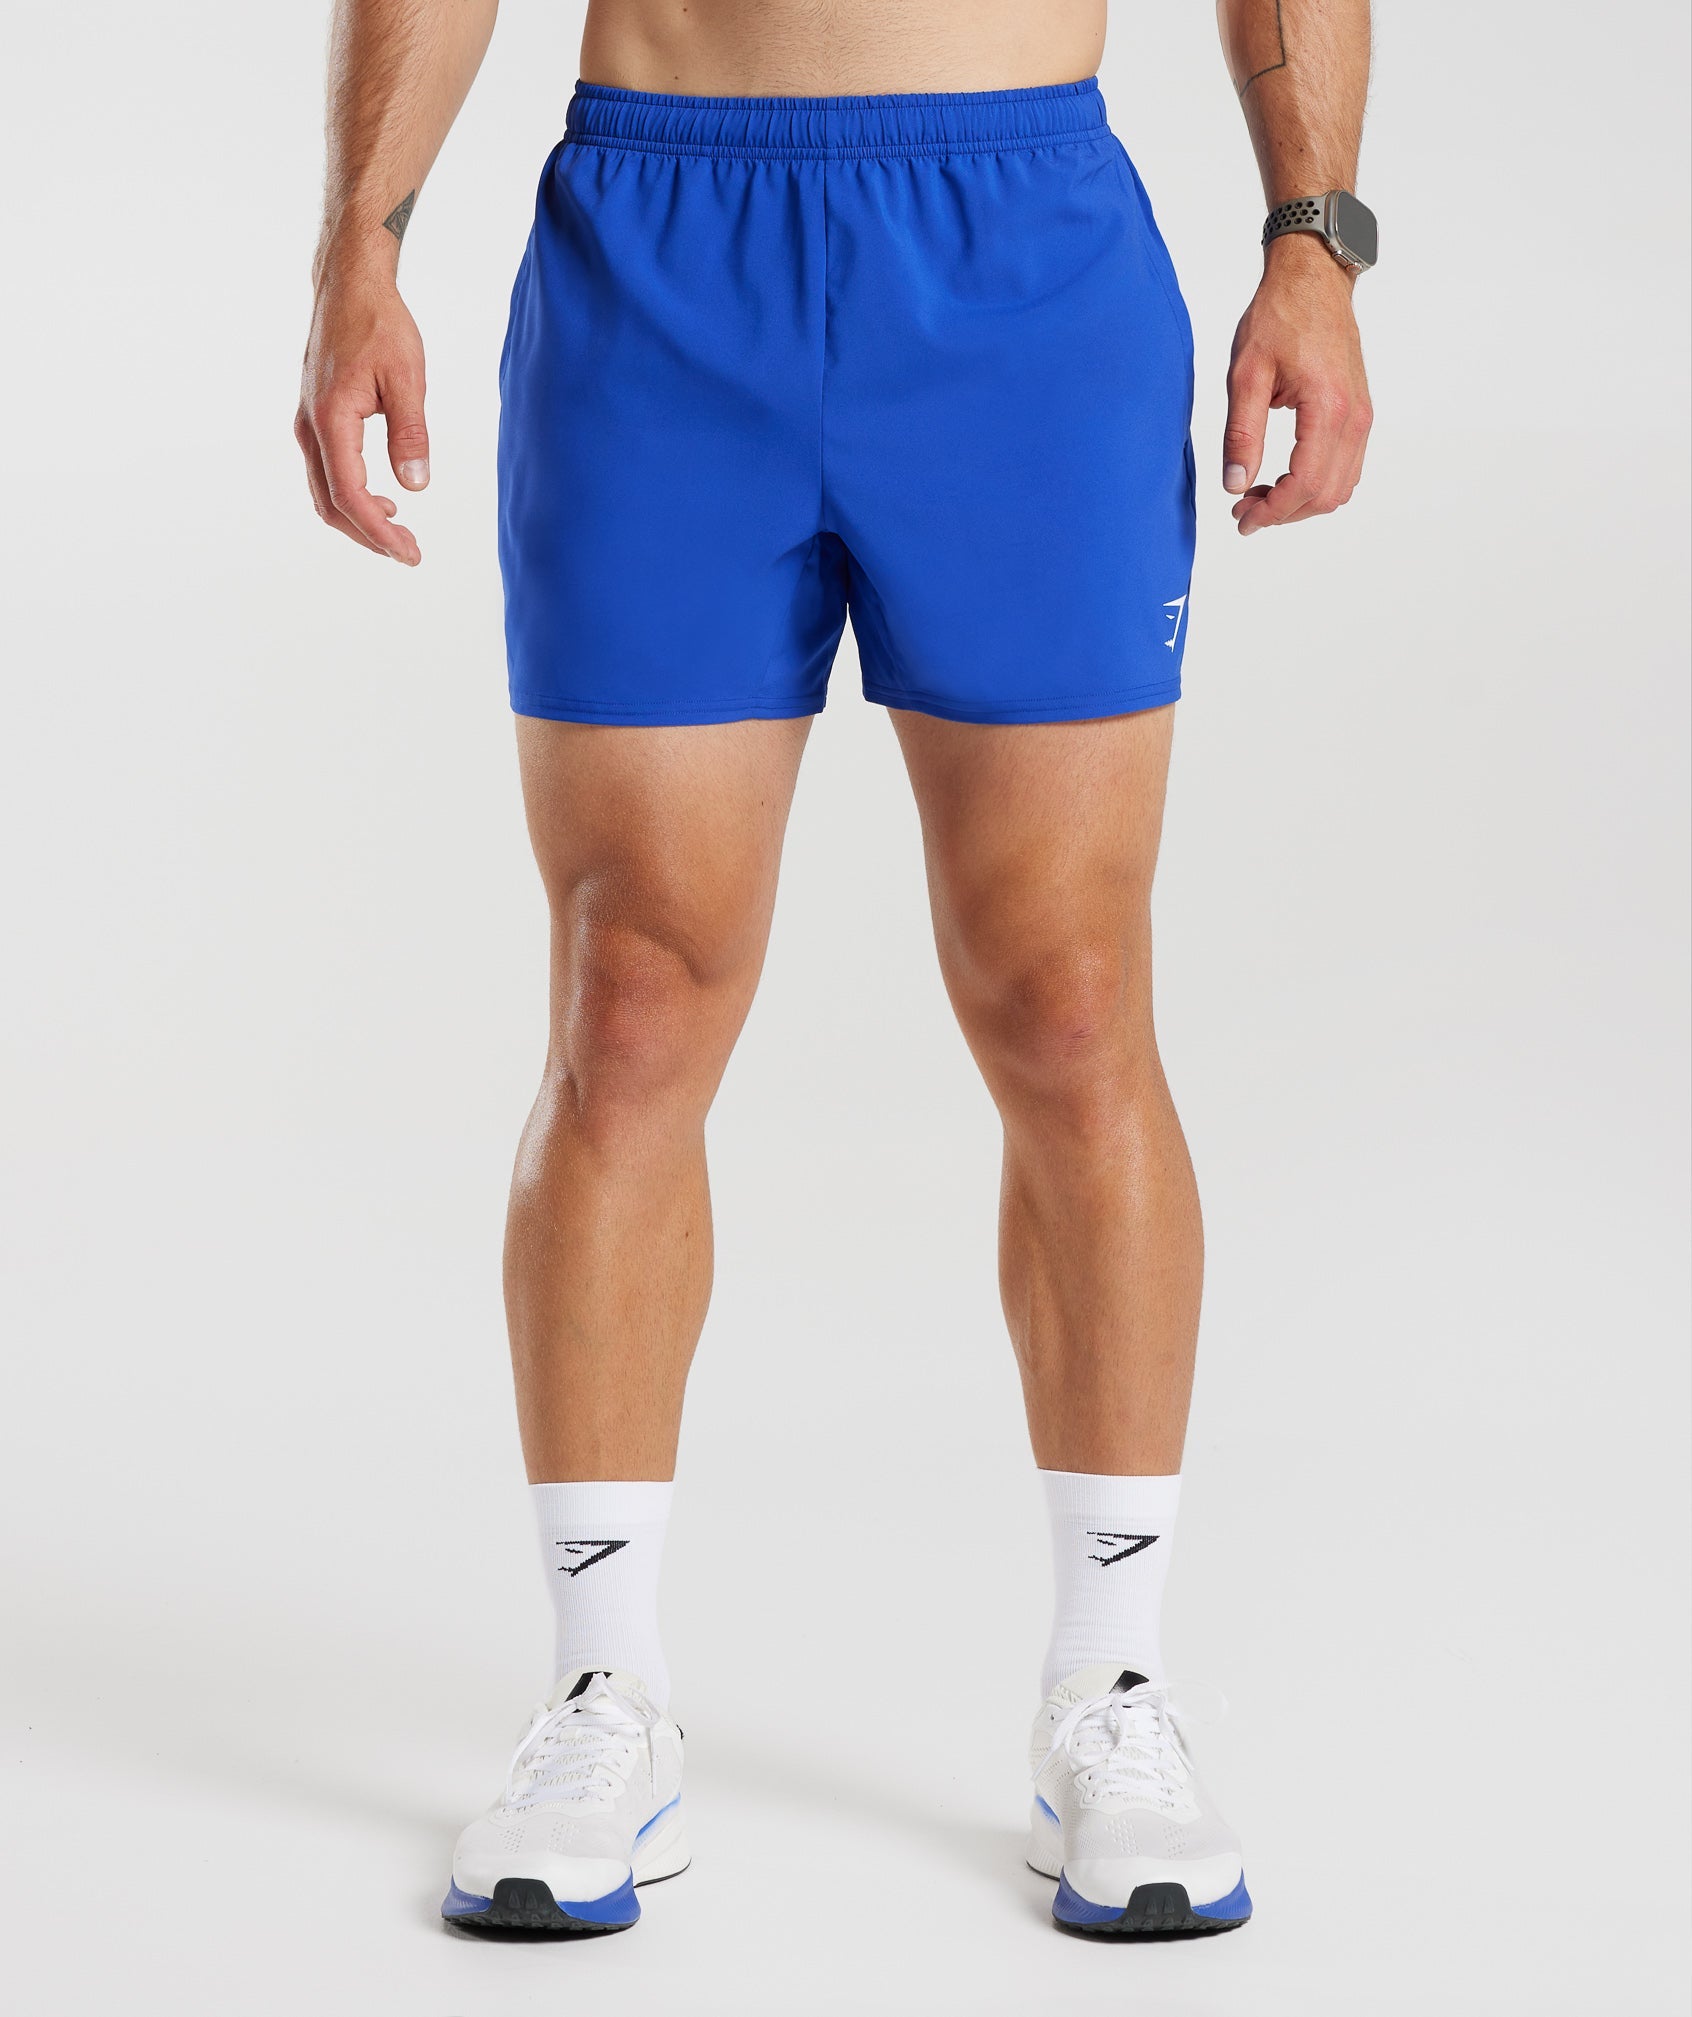 Gymshark Arrival 5 Shorts - Vintage Blue